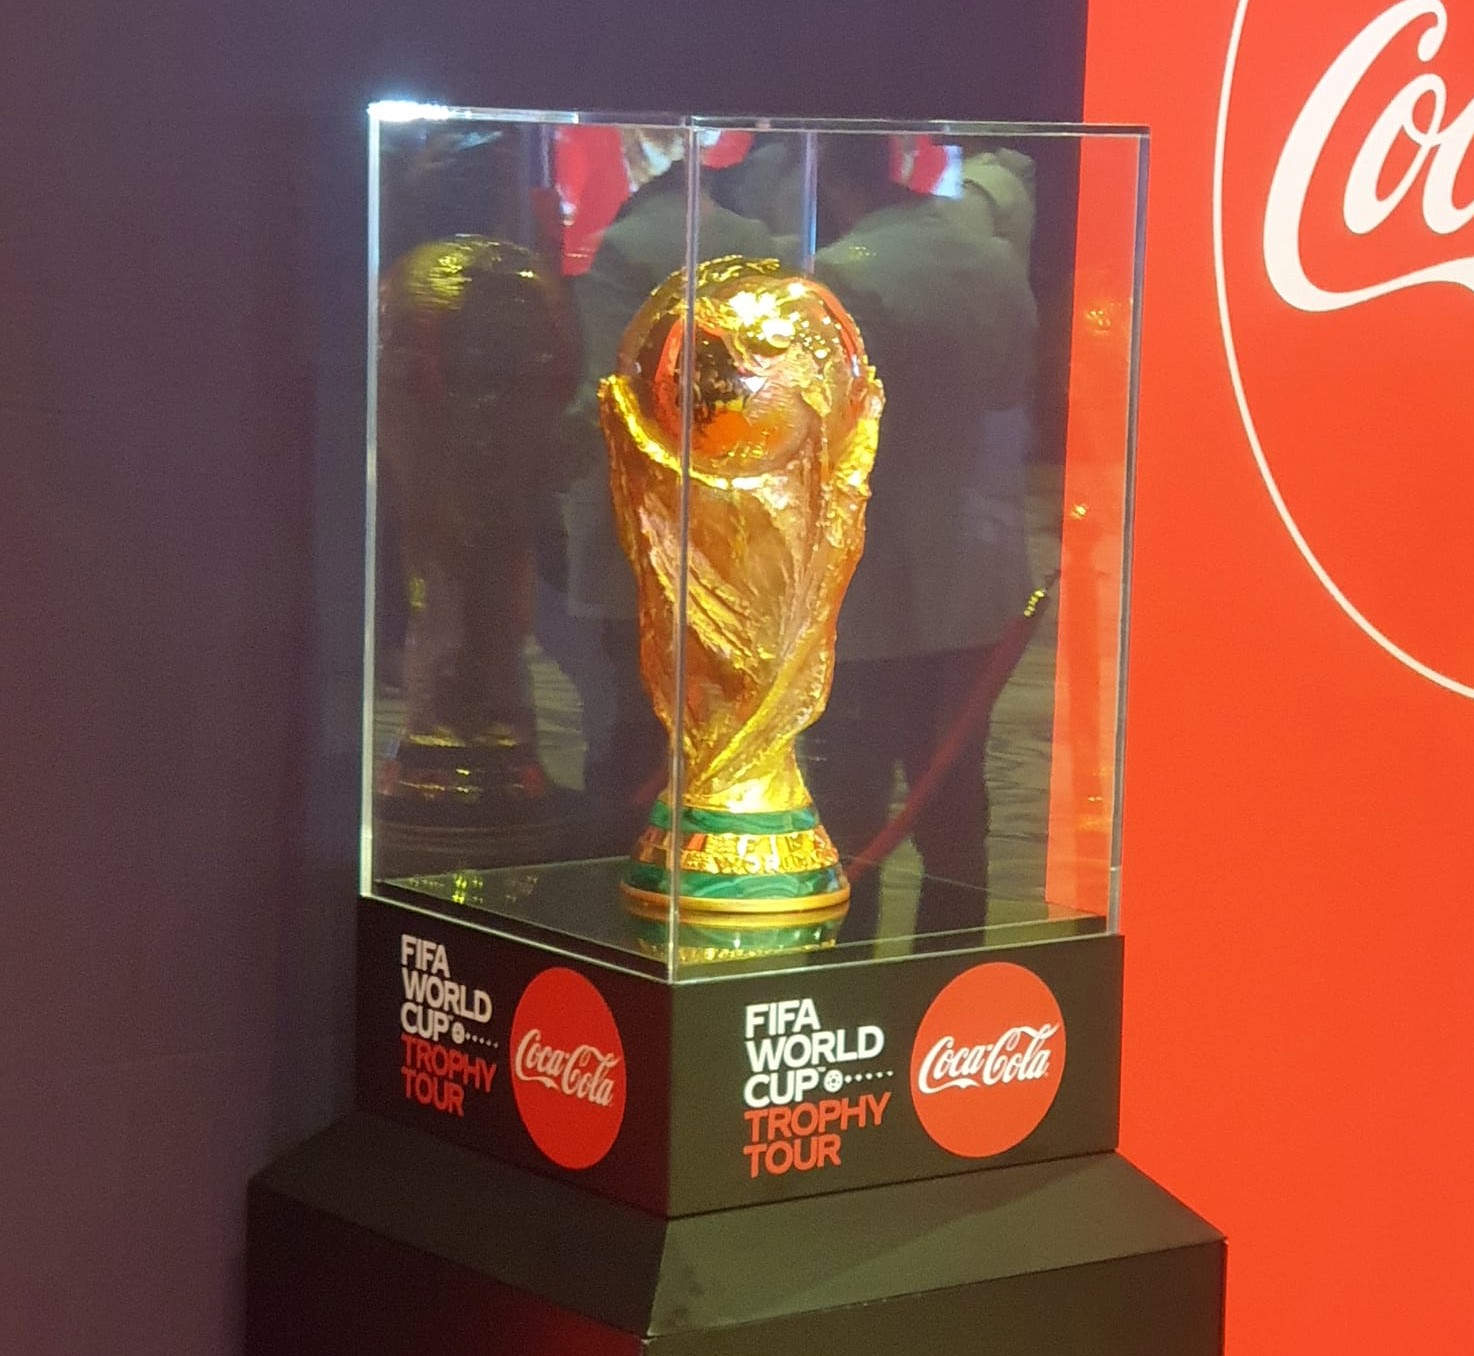 La Tunisie accueille le trophée de la Coupe du Monde de la FIFA